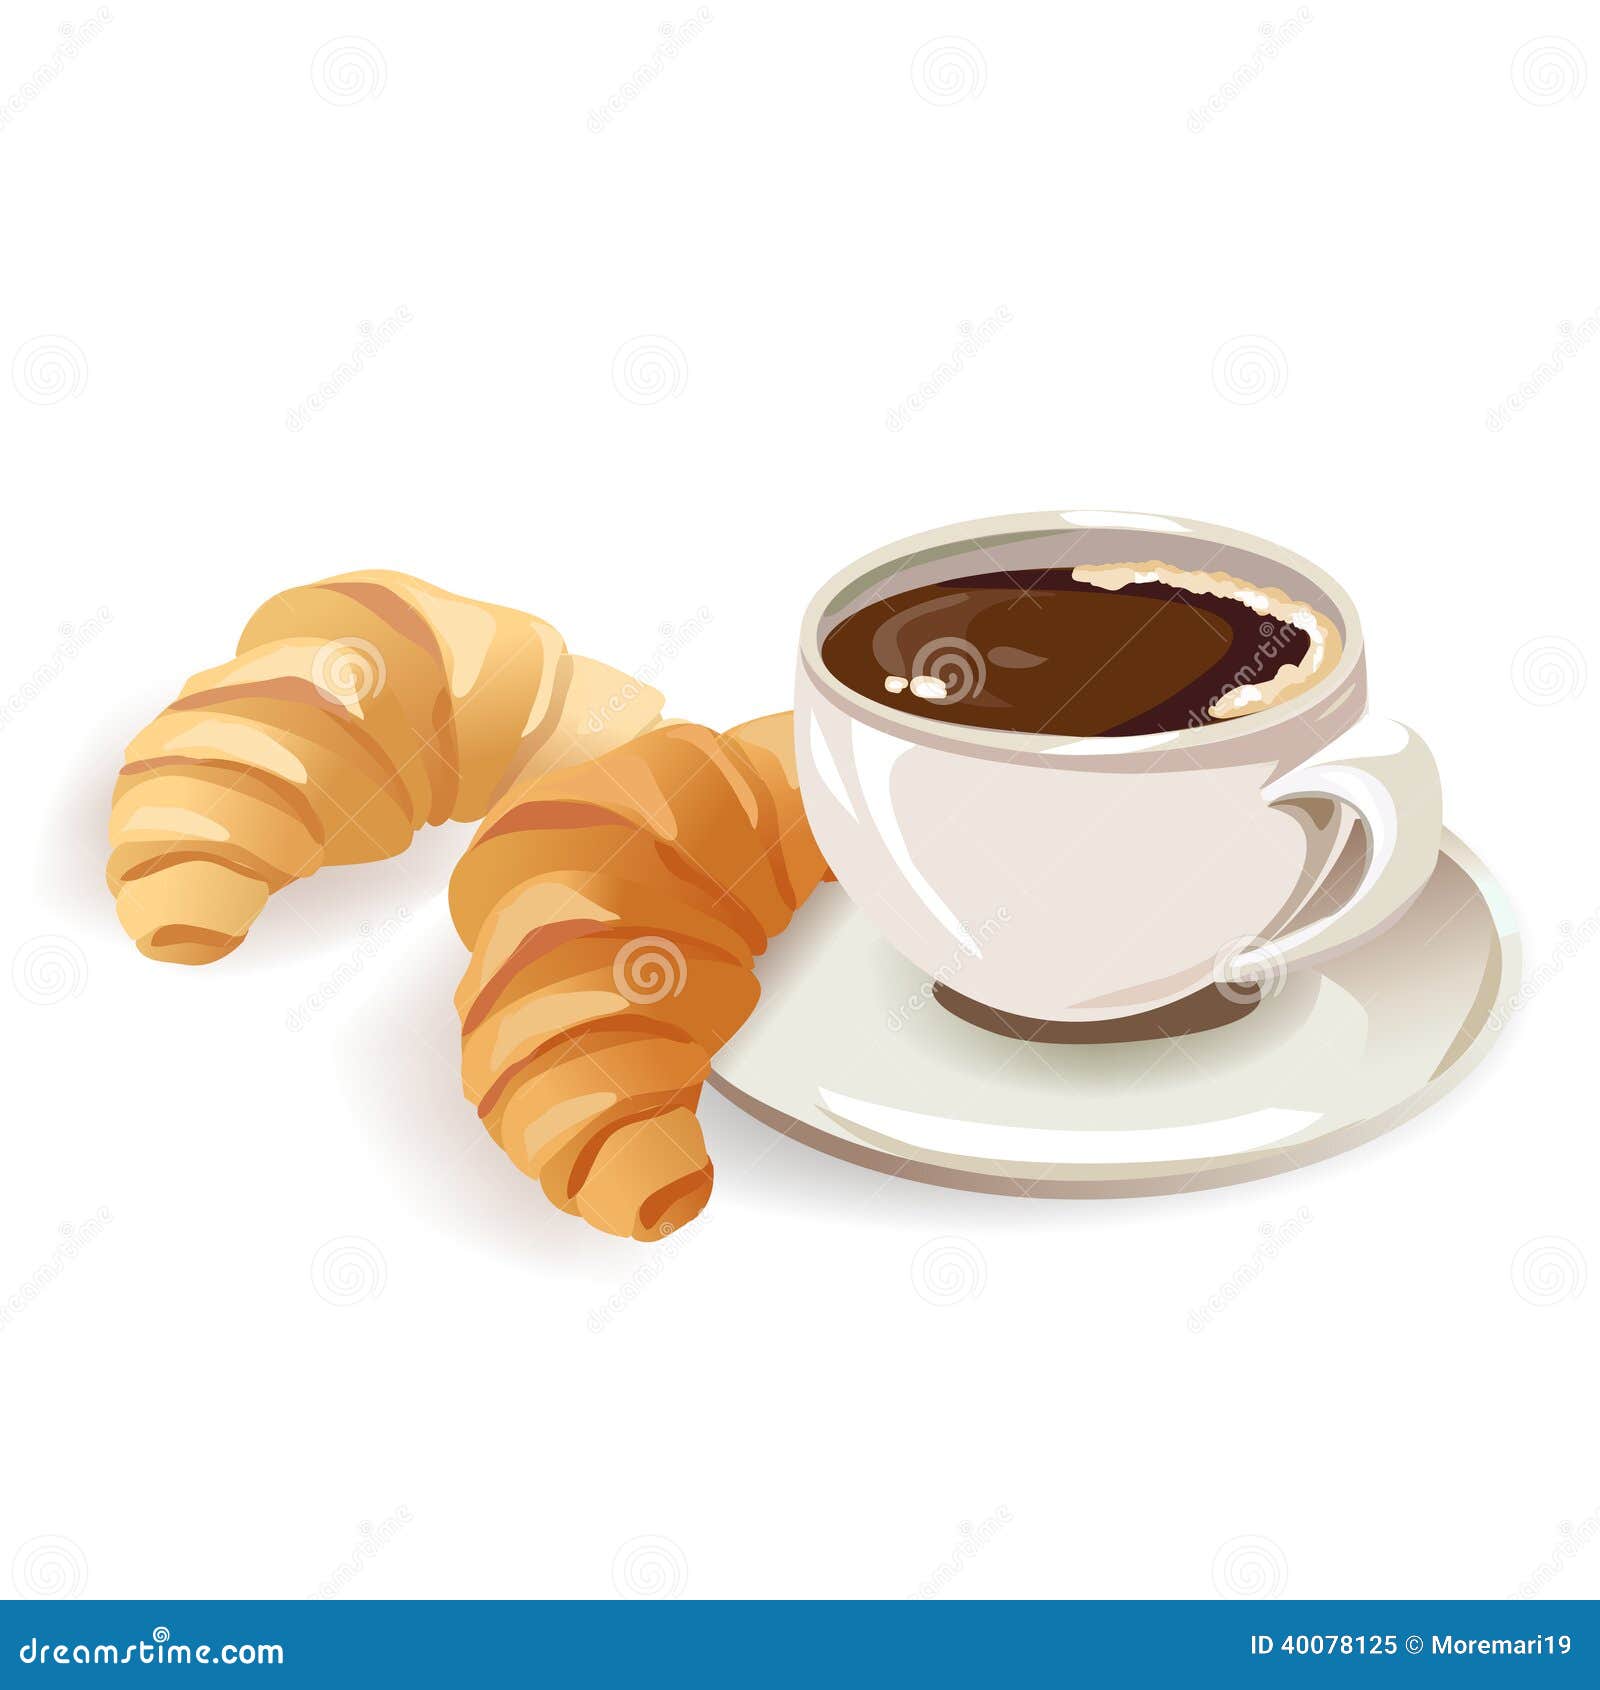 clipart caf�� croissant - photo #7